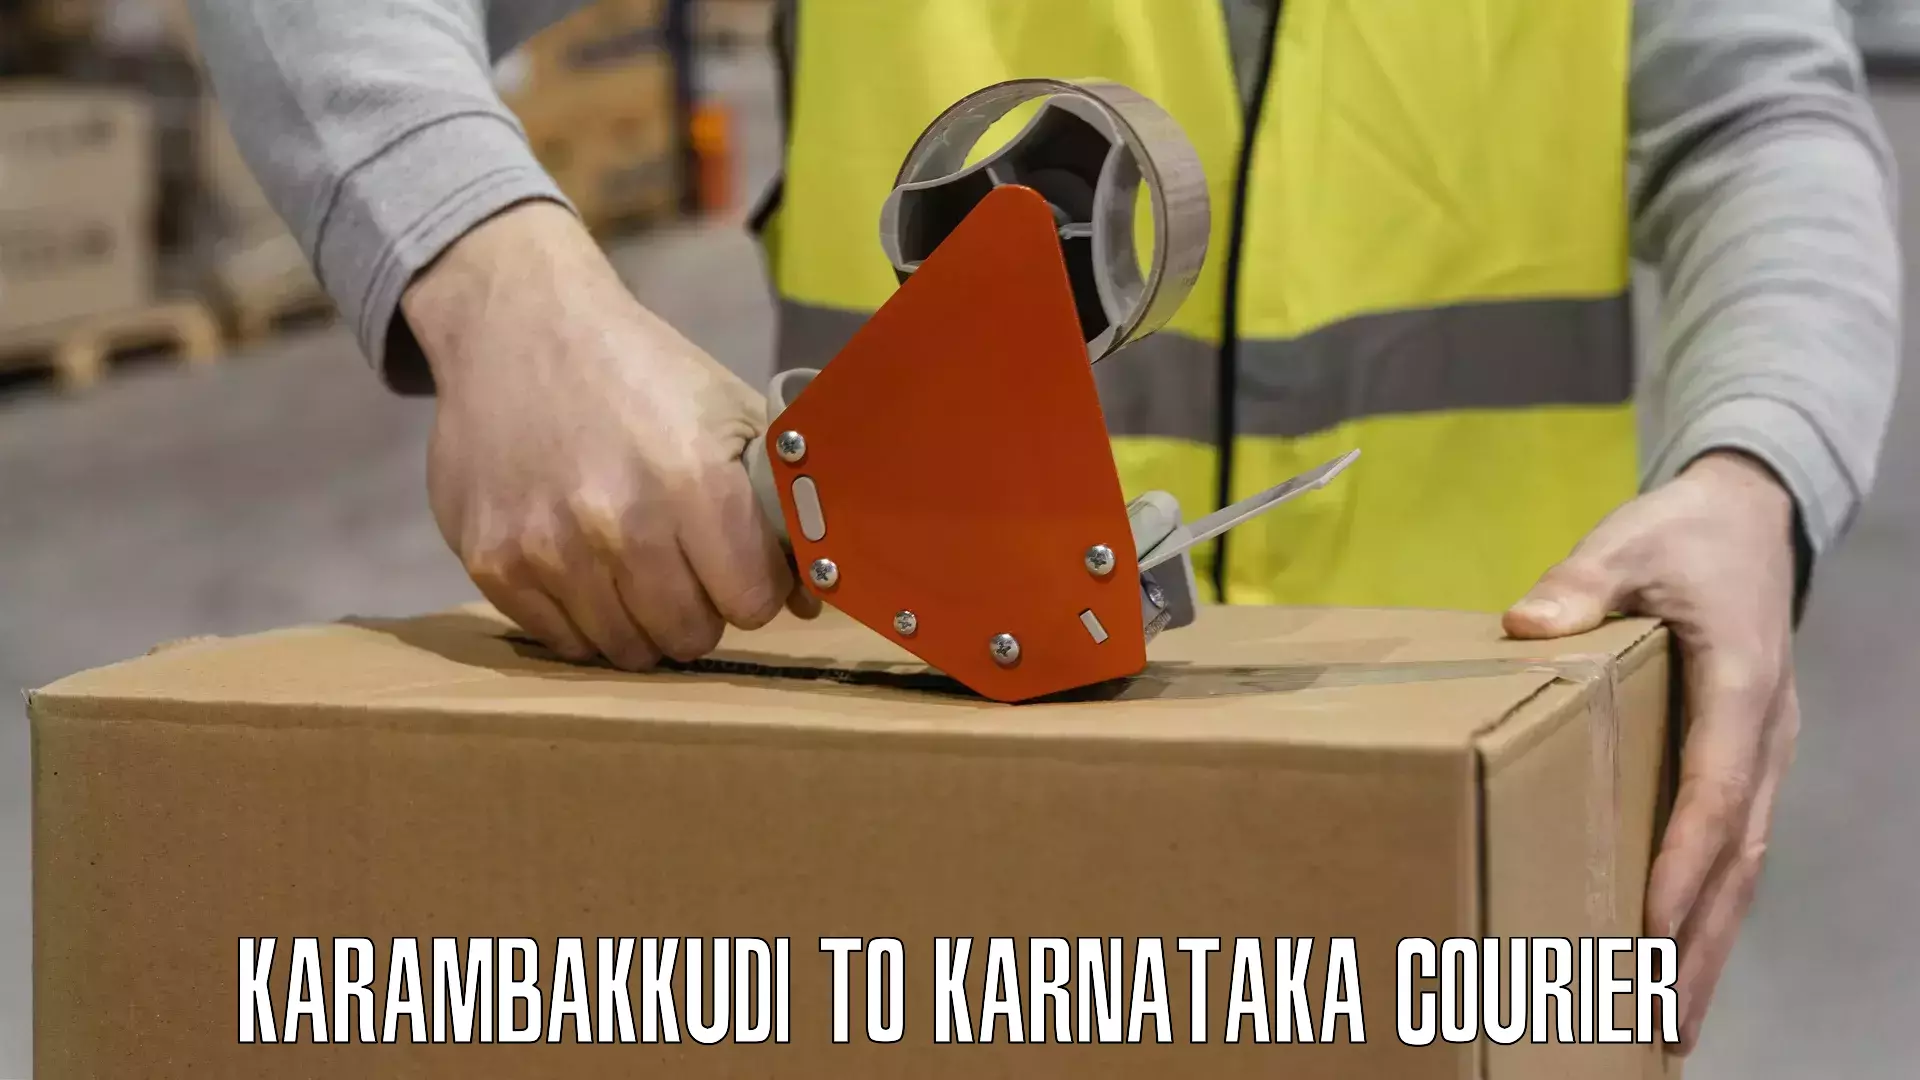 Efficient shipping platforms Karambakkudi to Karnataka